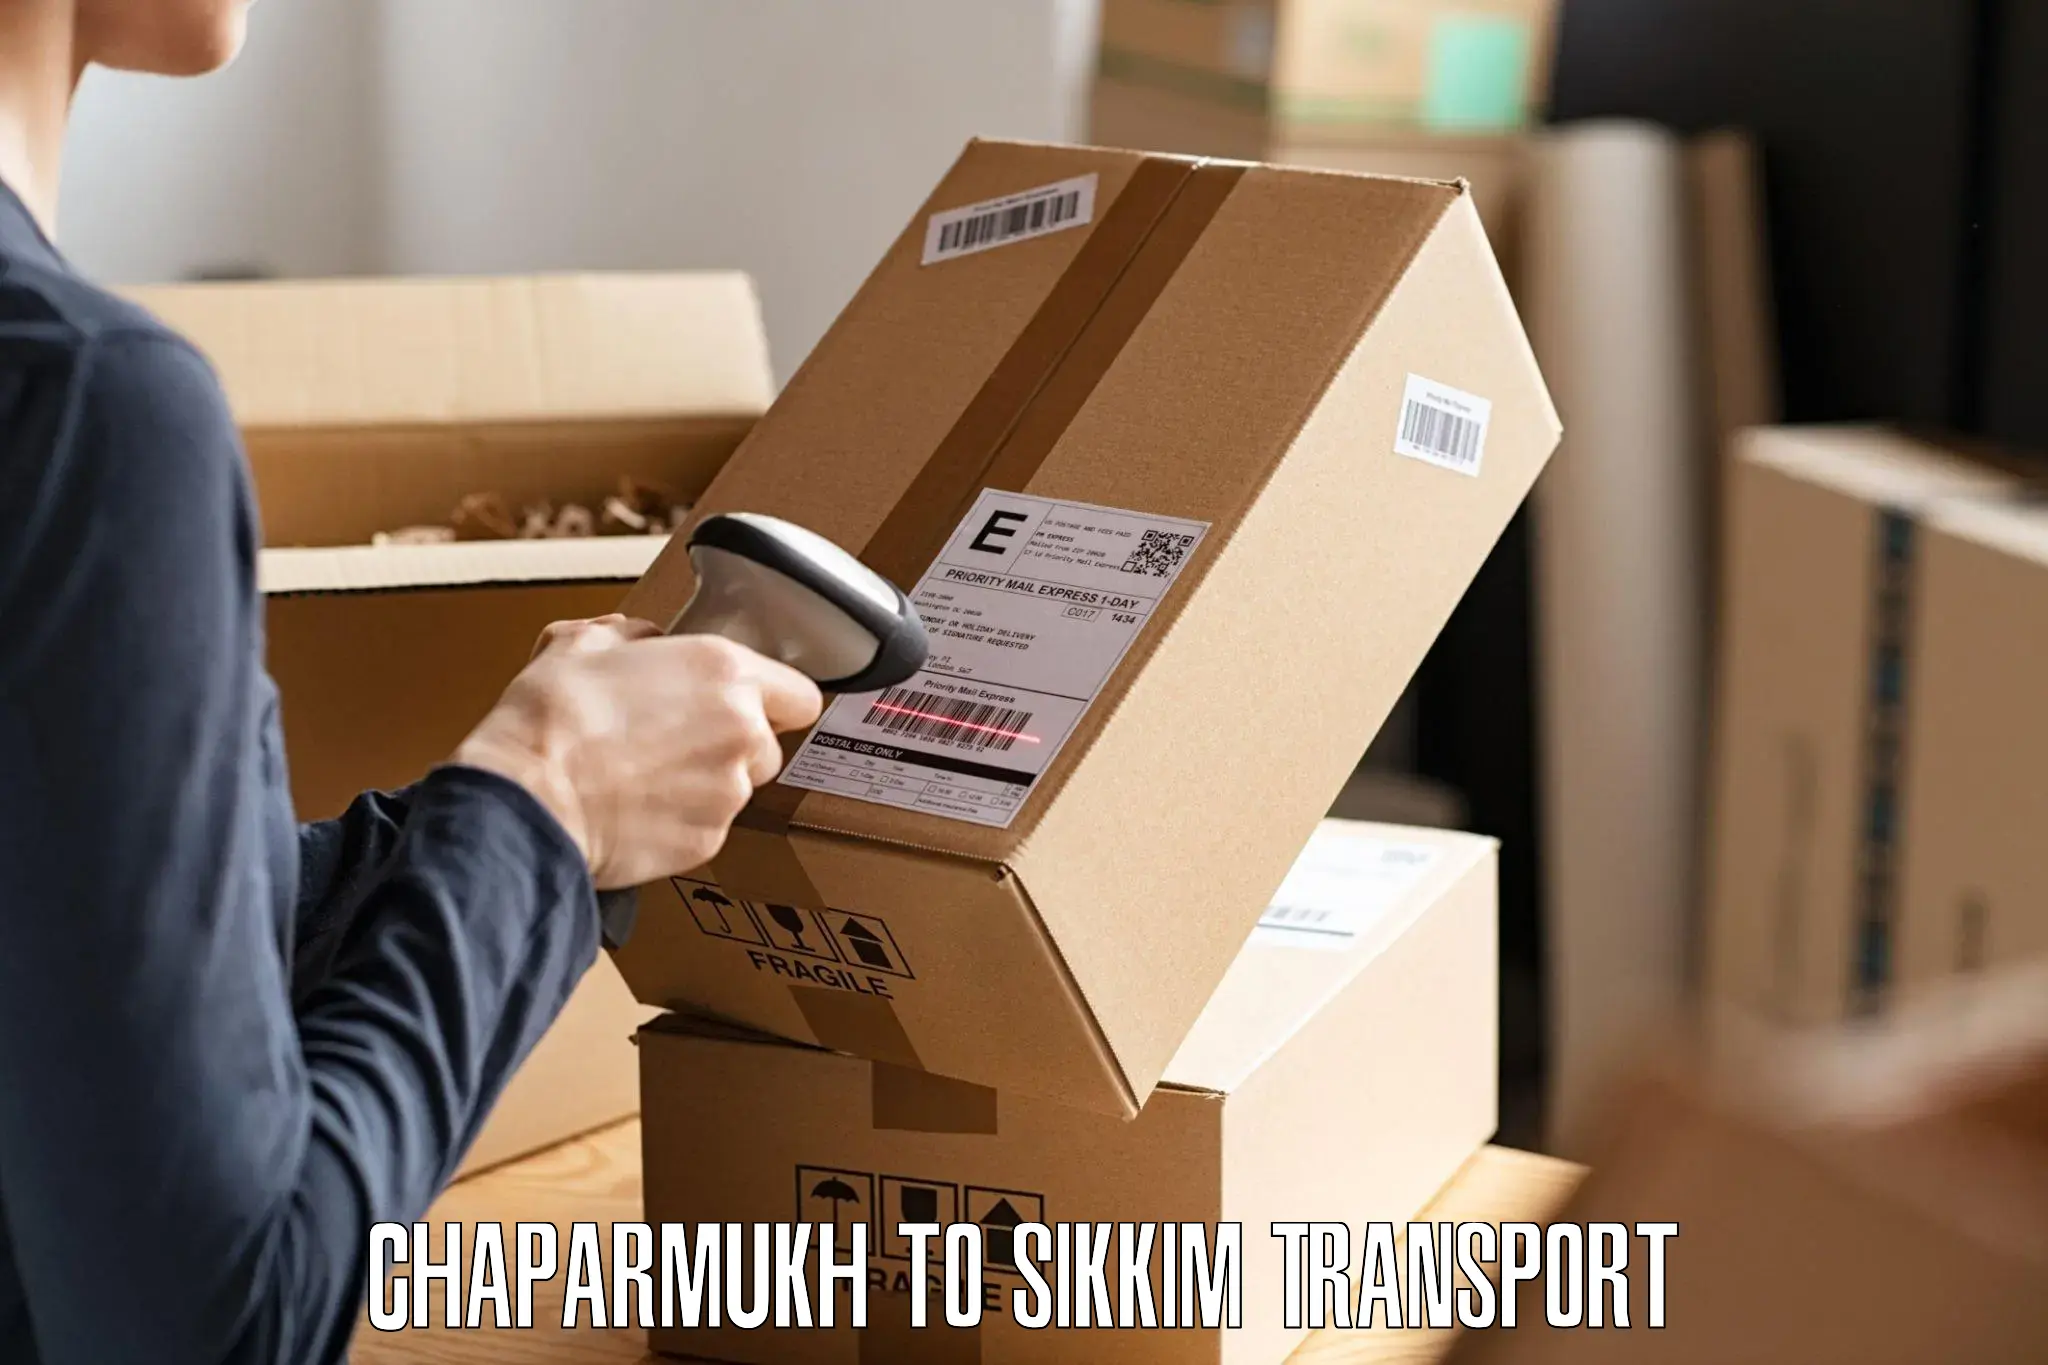 Parcel transport services Chaparmukh to Ravangla